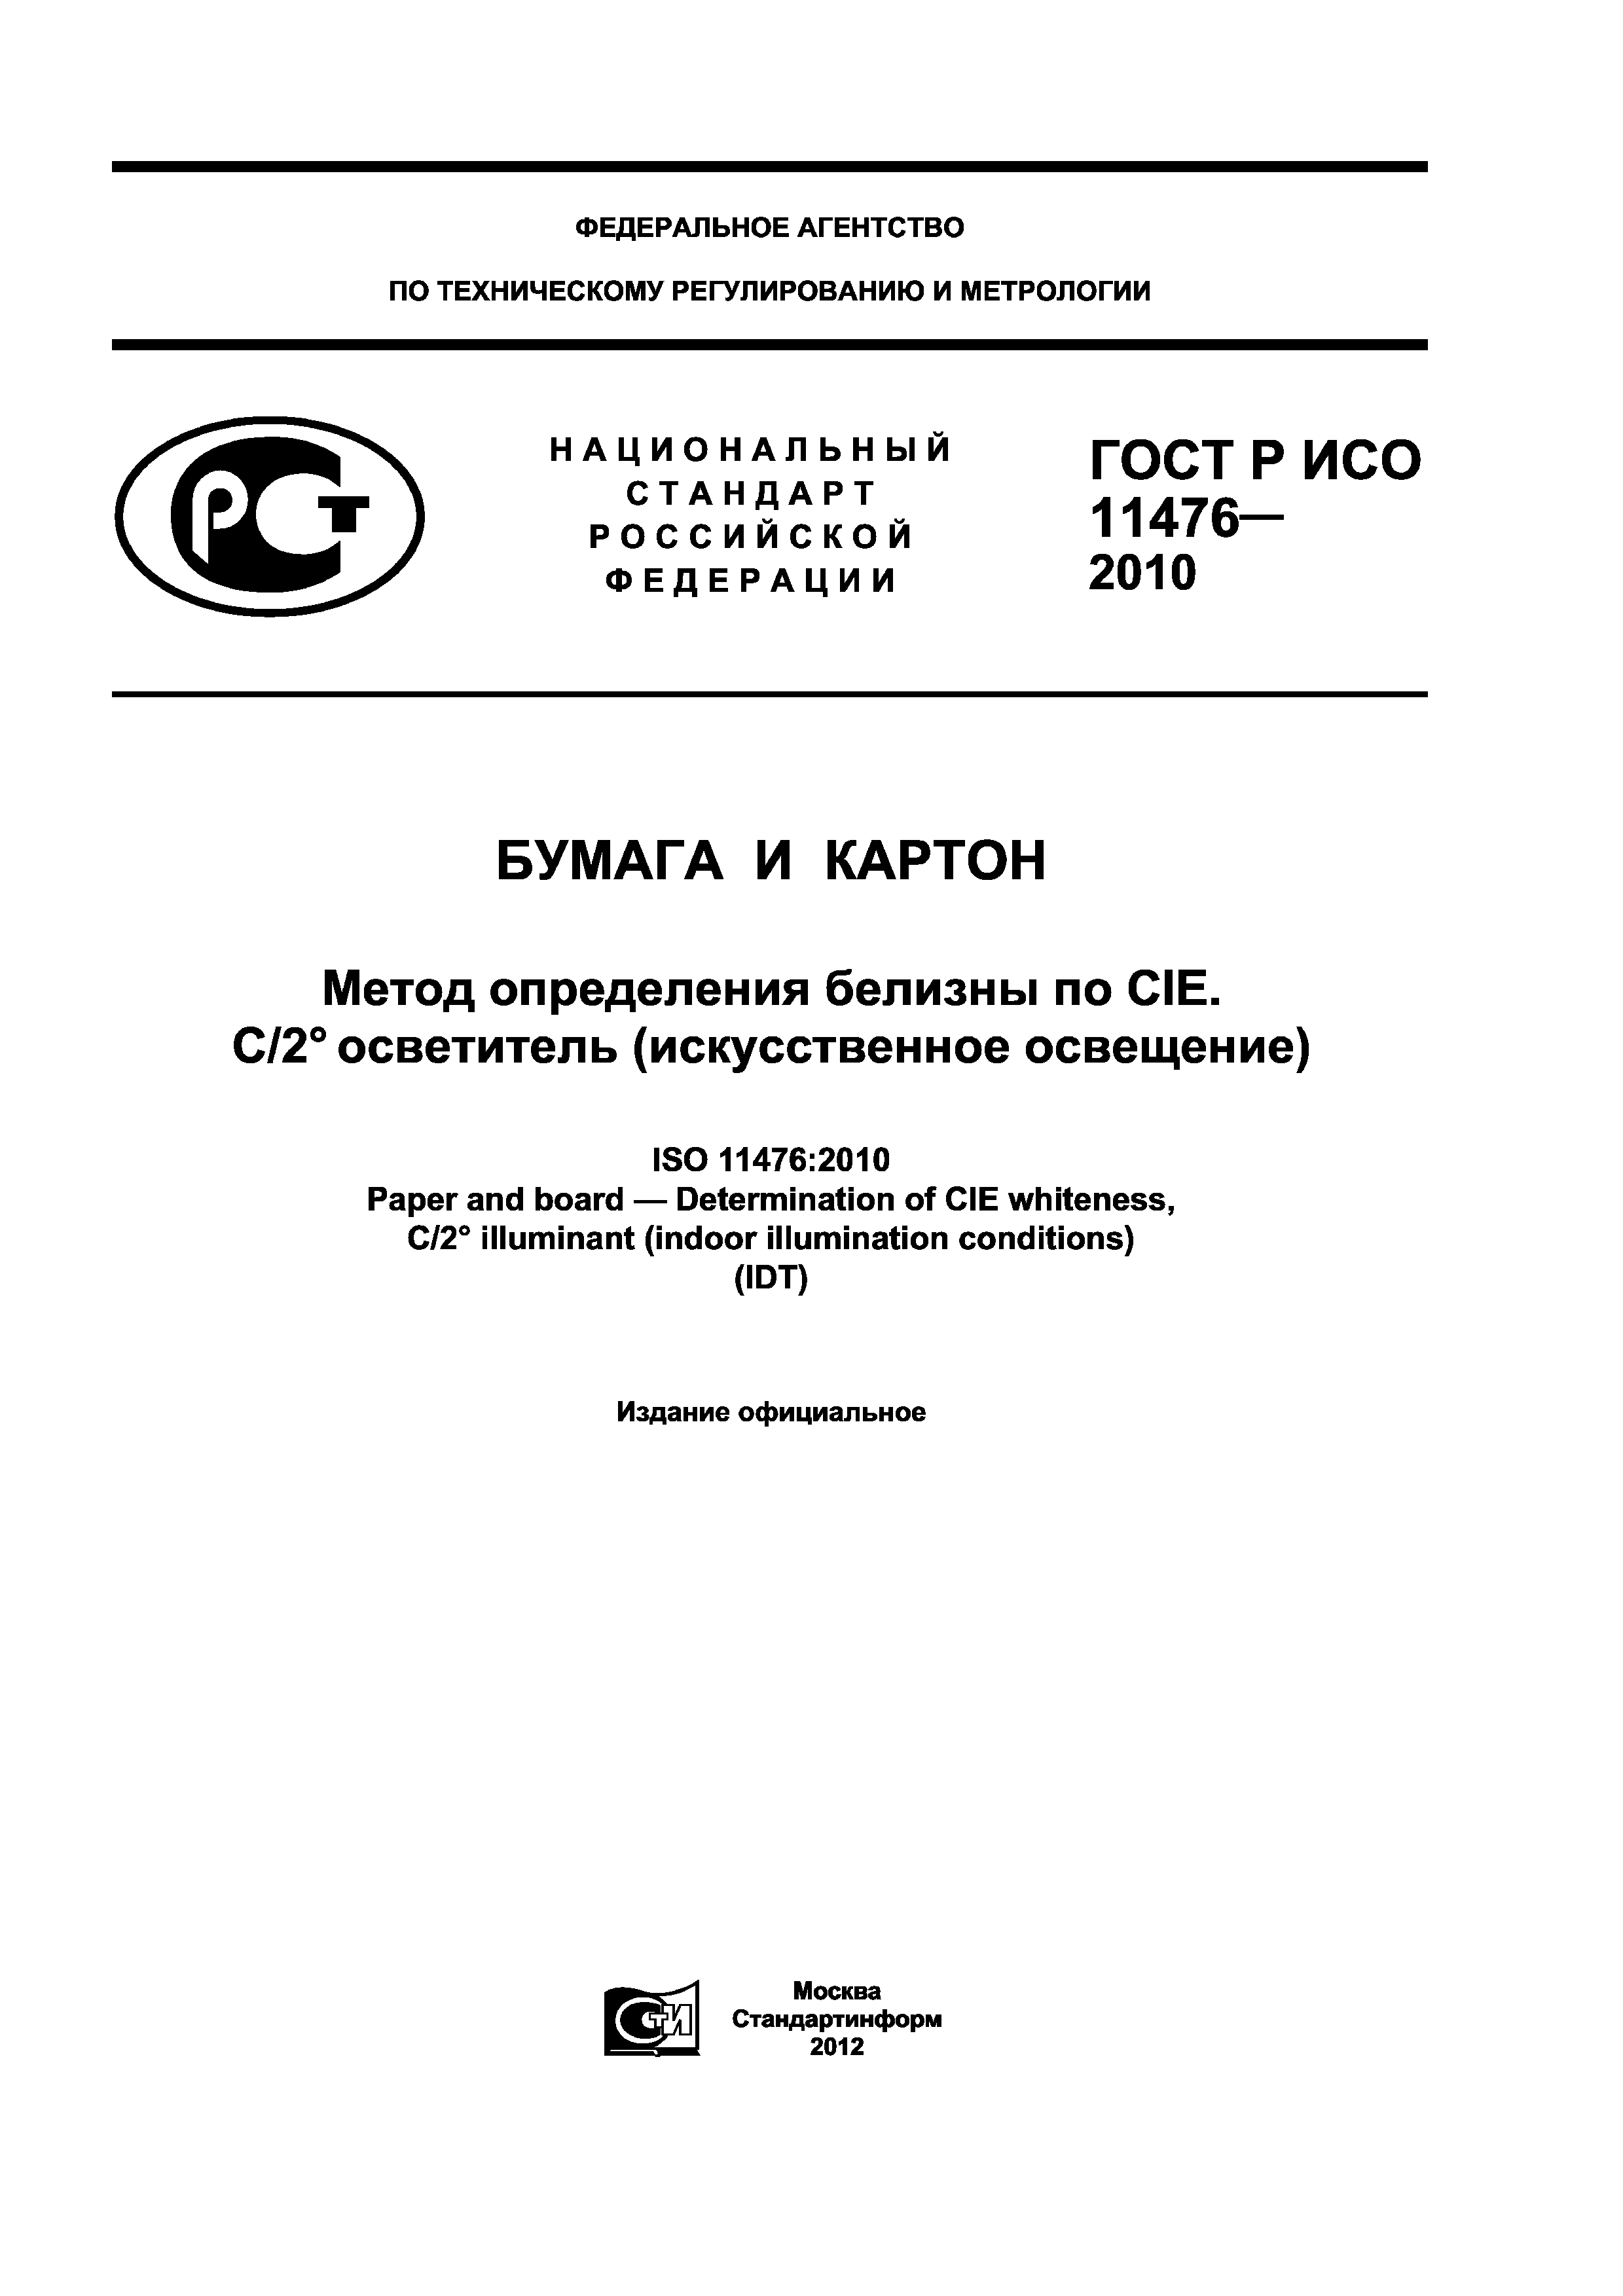 ГОСТ Р ИСО 11476-2010